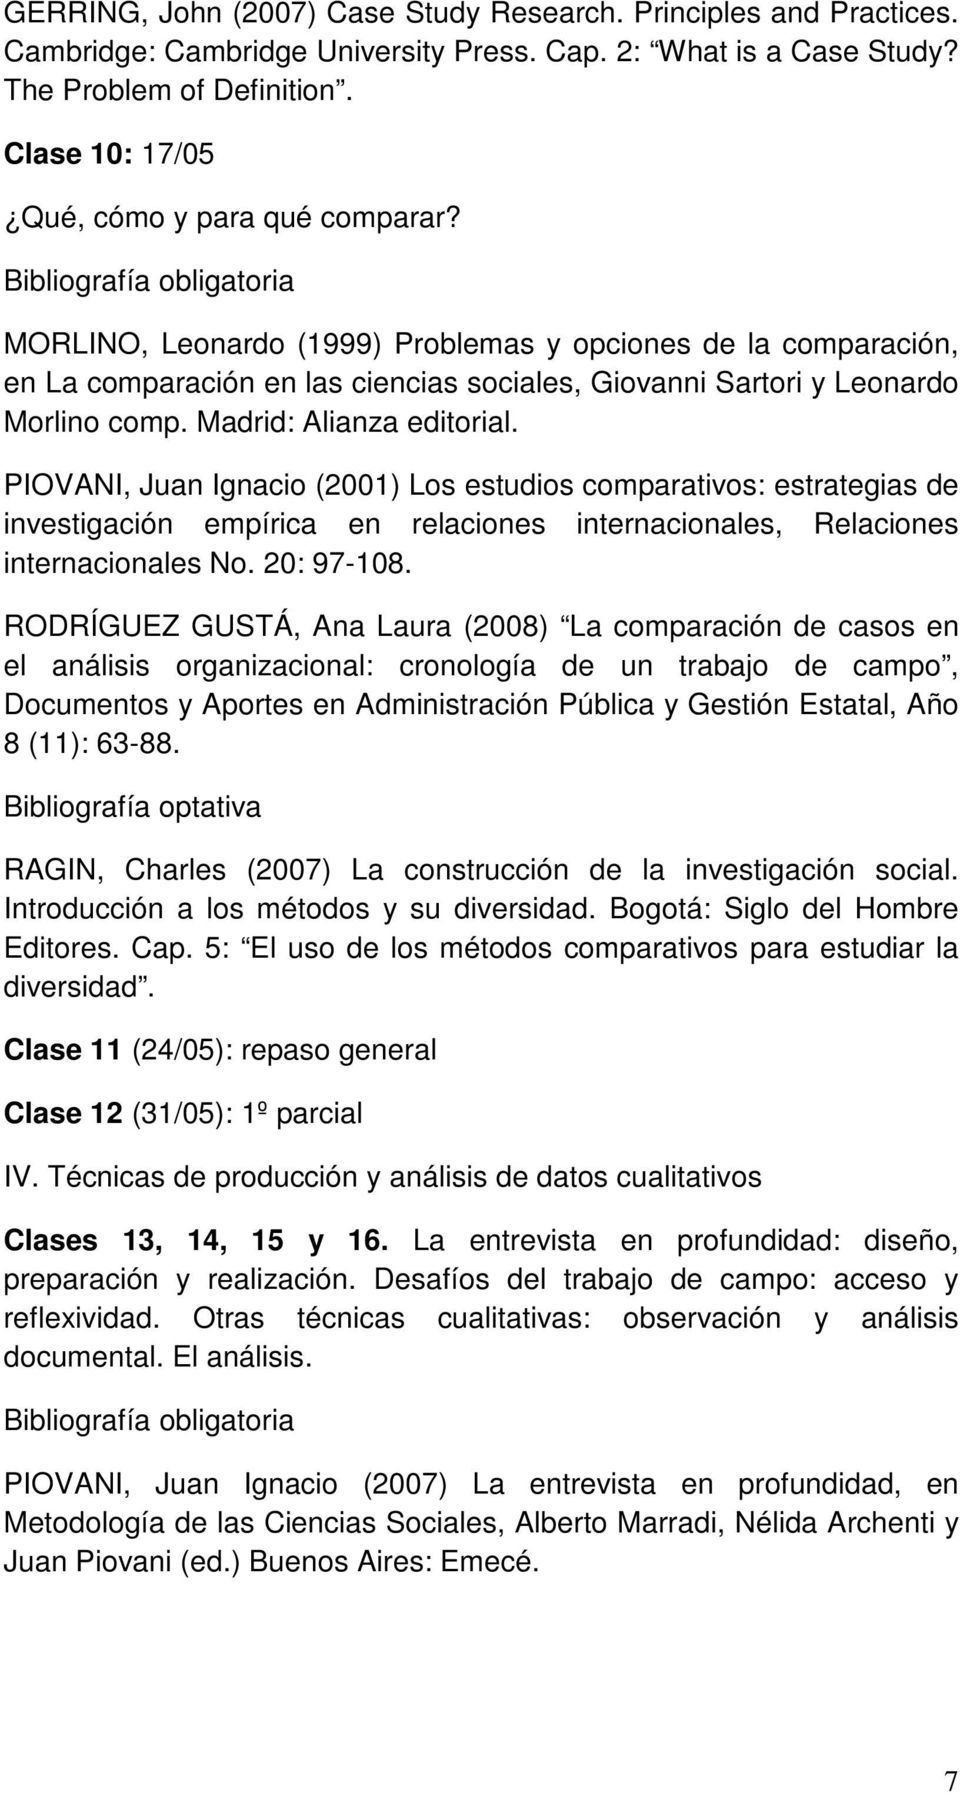 Madrid: Alianza editorial. PIOVANI, Juan Ignacio (2001) Los estudios comparativos: estrategias de investigación empírica en relaciones internacionales, Relaciones internacionales No. 20: 97-108.